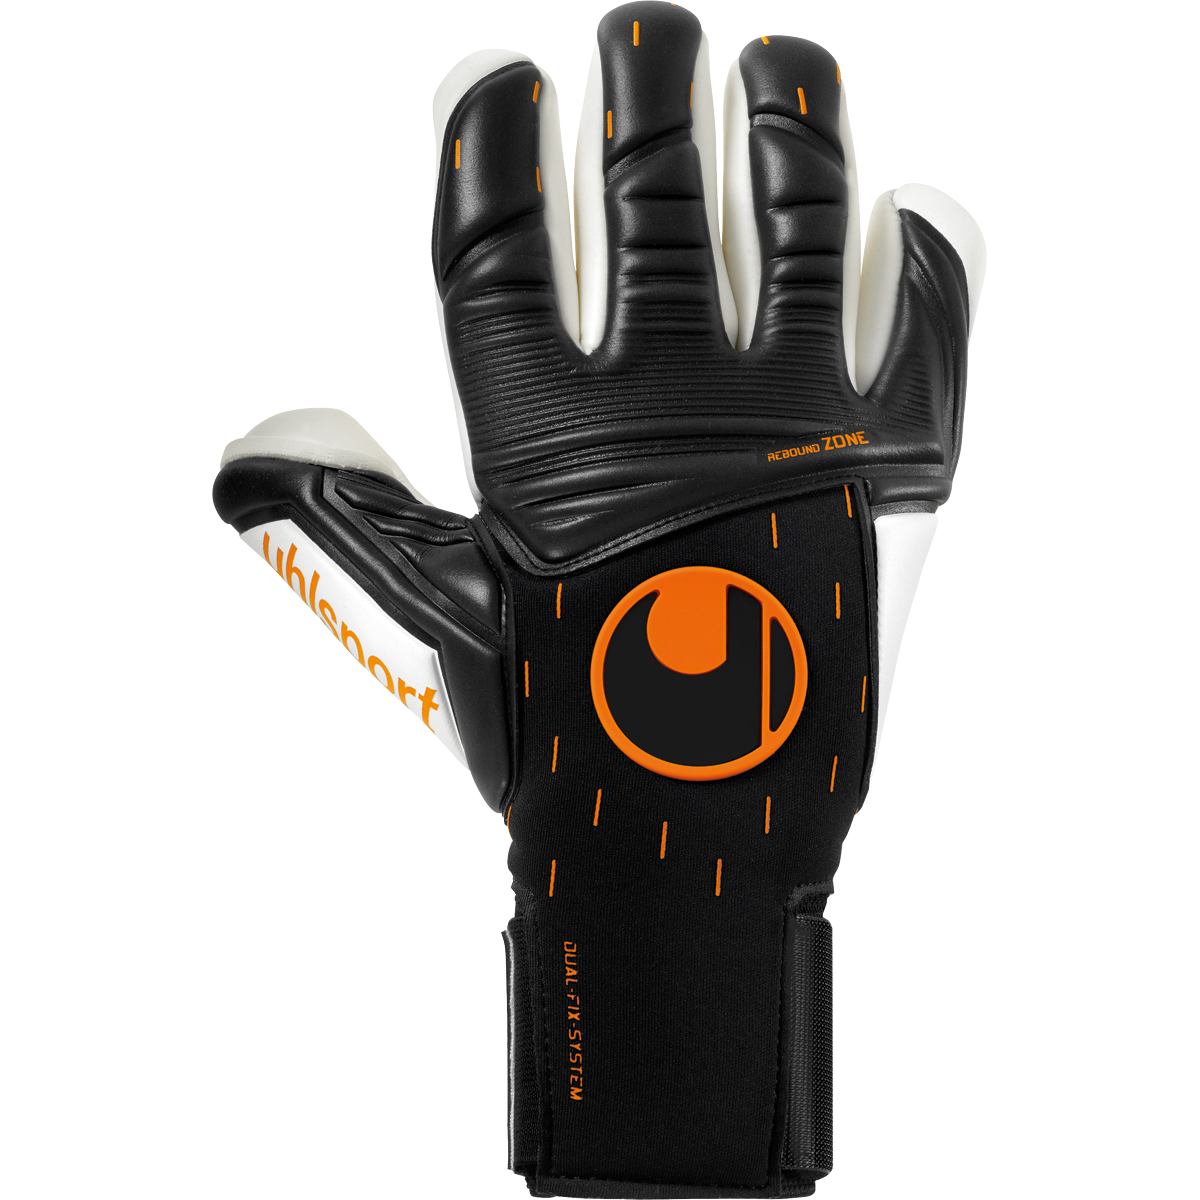 Uhlsport Torwarthandschuh Speed Contact Absolutgr. Finger Surround schwarz/weiß/fluo orange